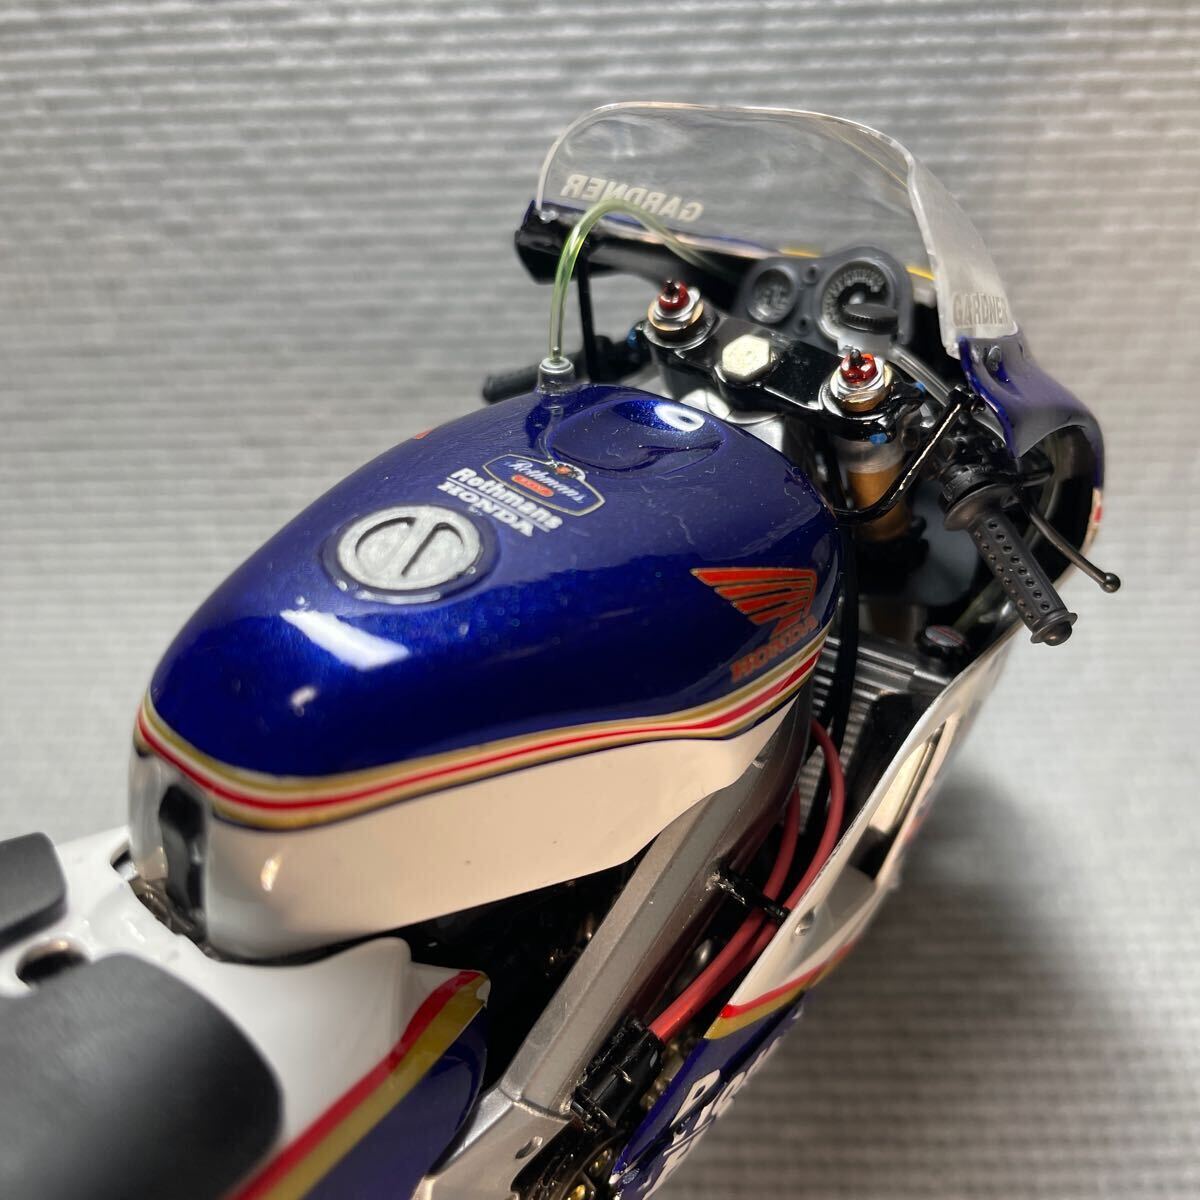  Hasegawa 1:12 мотоцикл серии BK-4 Honda NSR500 *1989 WGP500 CHAMPION~ No.2 GARDNER пластиковая модель конечный продукт 